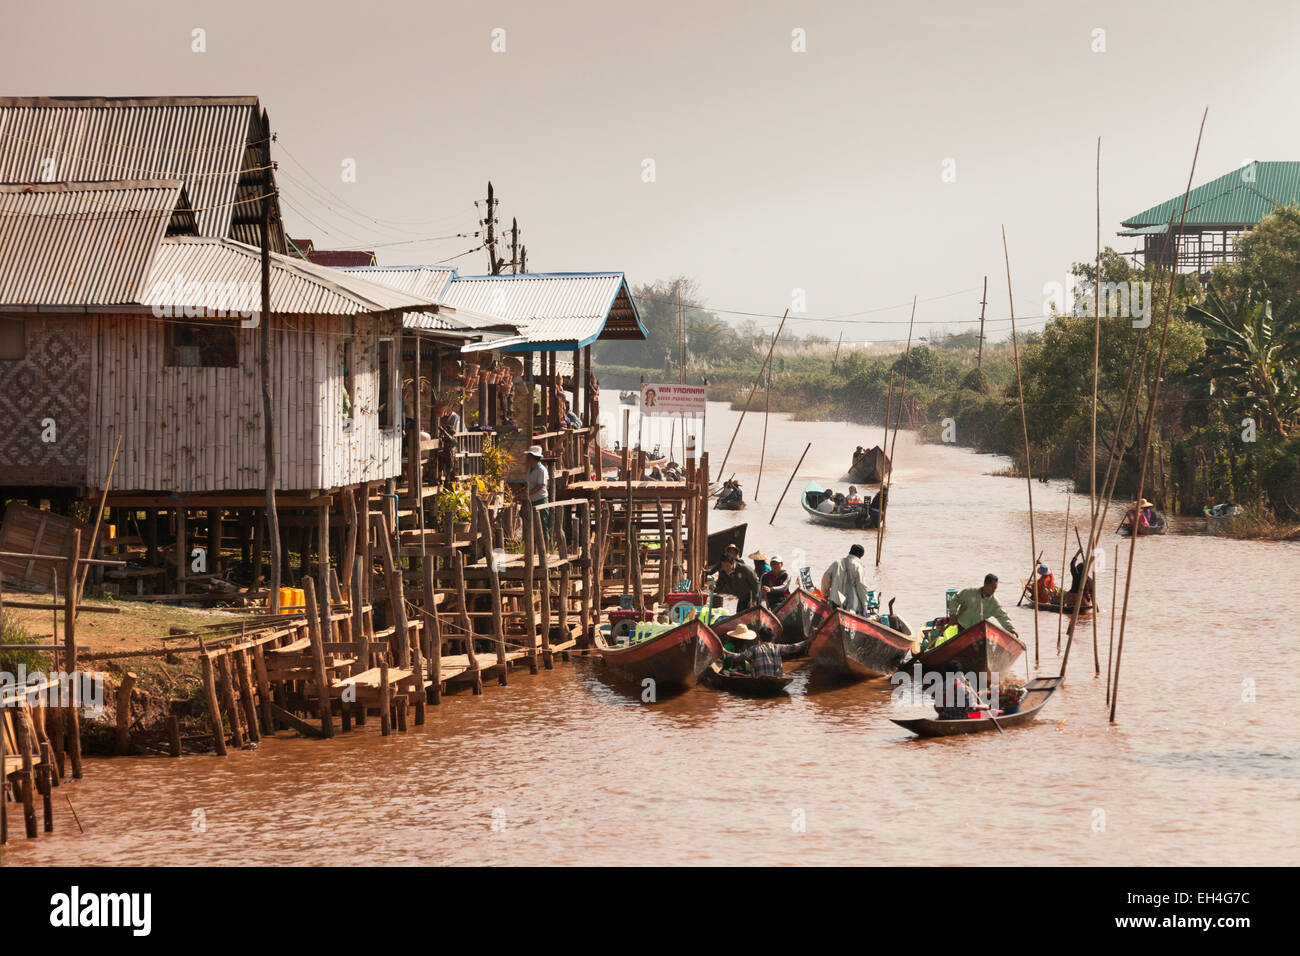 La scena del villaggio con il fiume, edifici e barche, Ywama village, Lago Inle, Myanmar ( Birmania ), Asia Foto Stock